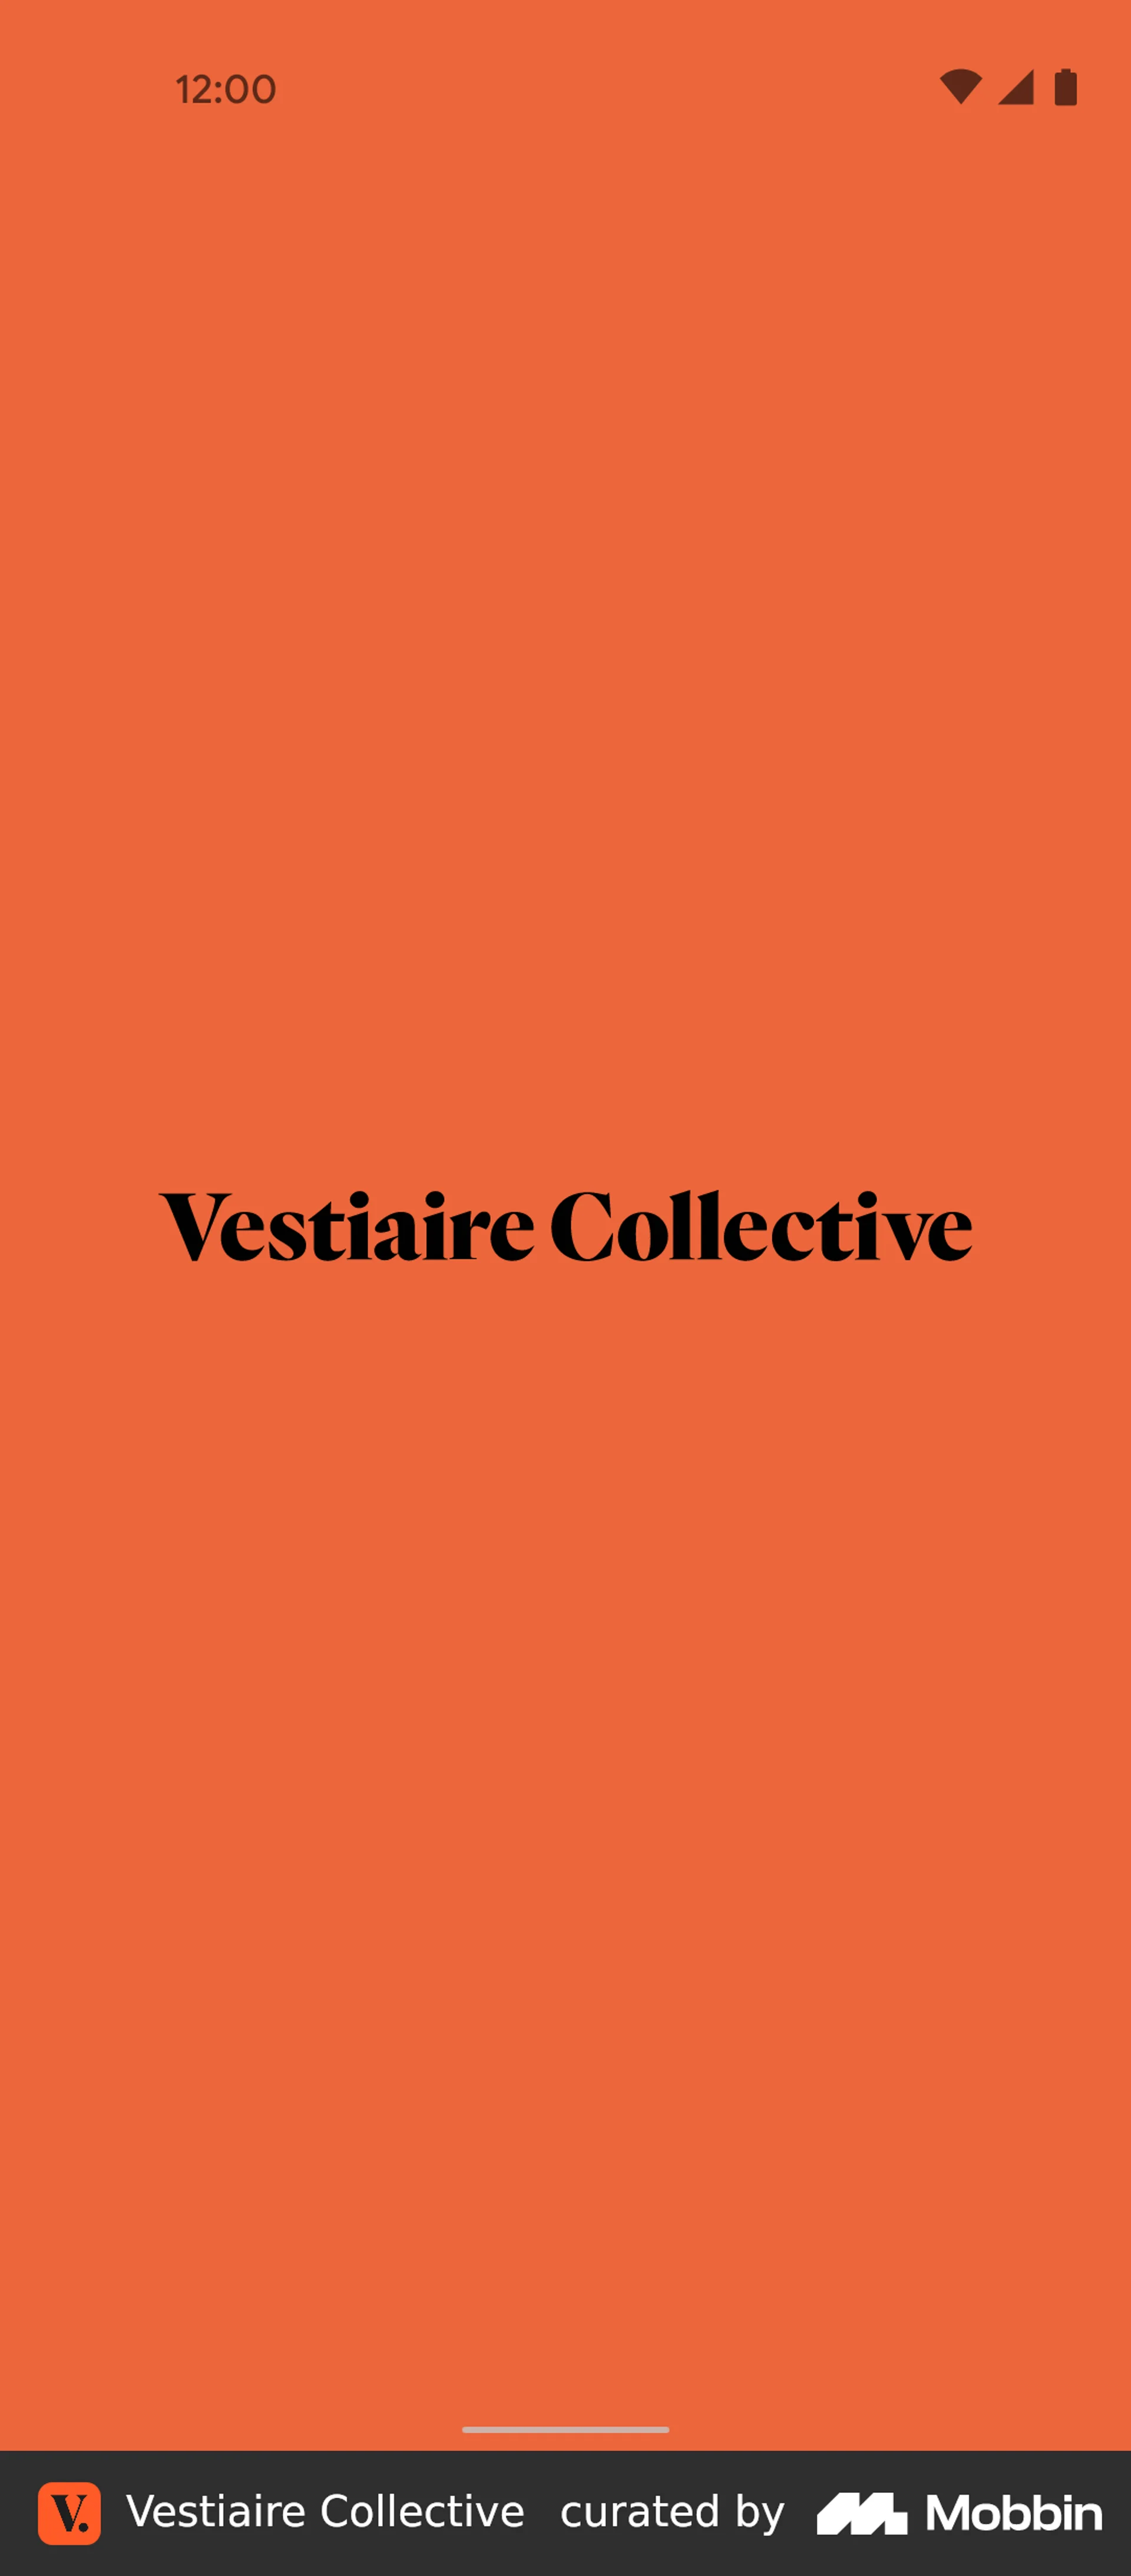 Vestiaire Collective brand profile UK 2022